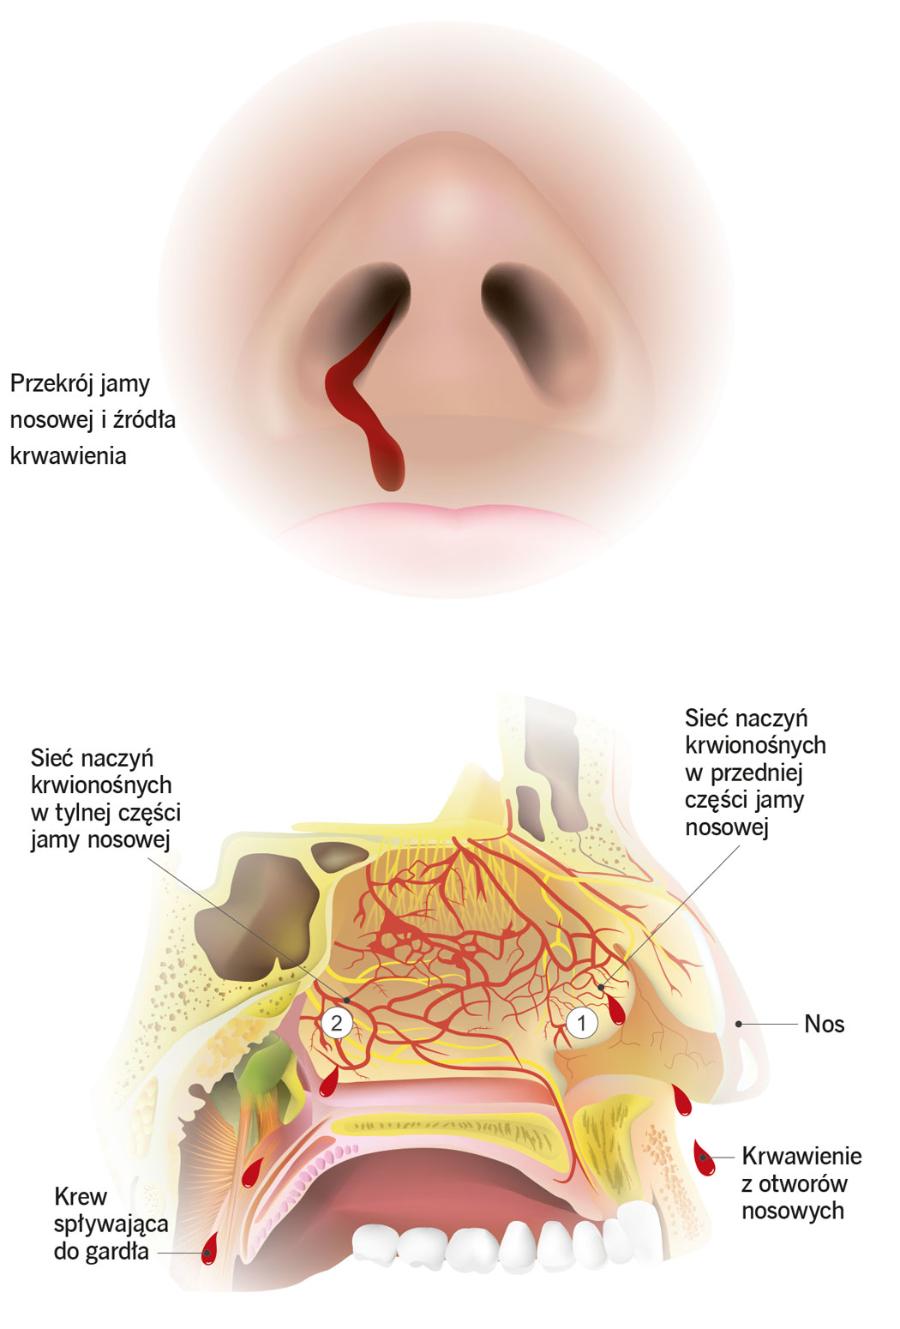 Przekrój jamy nosowej i źródła krwawienia.